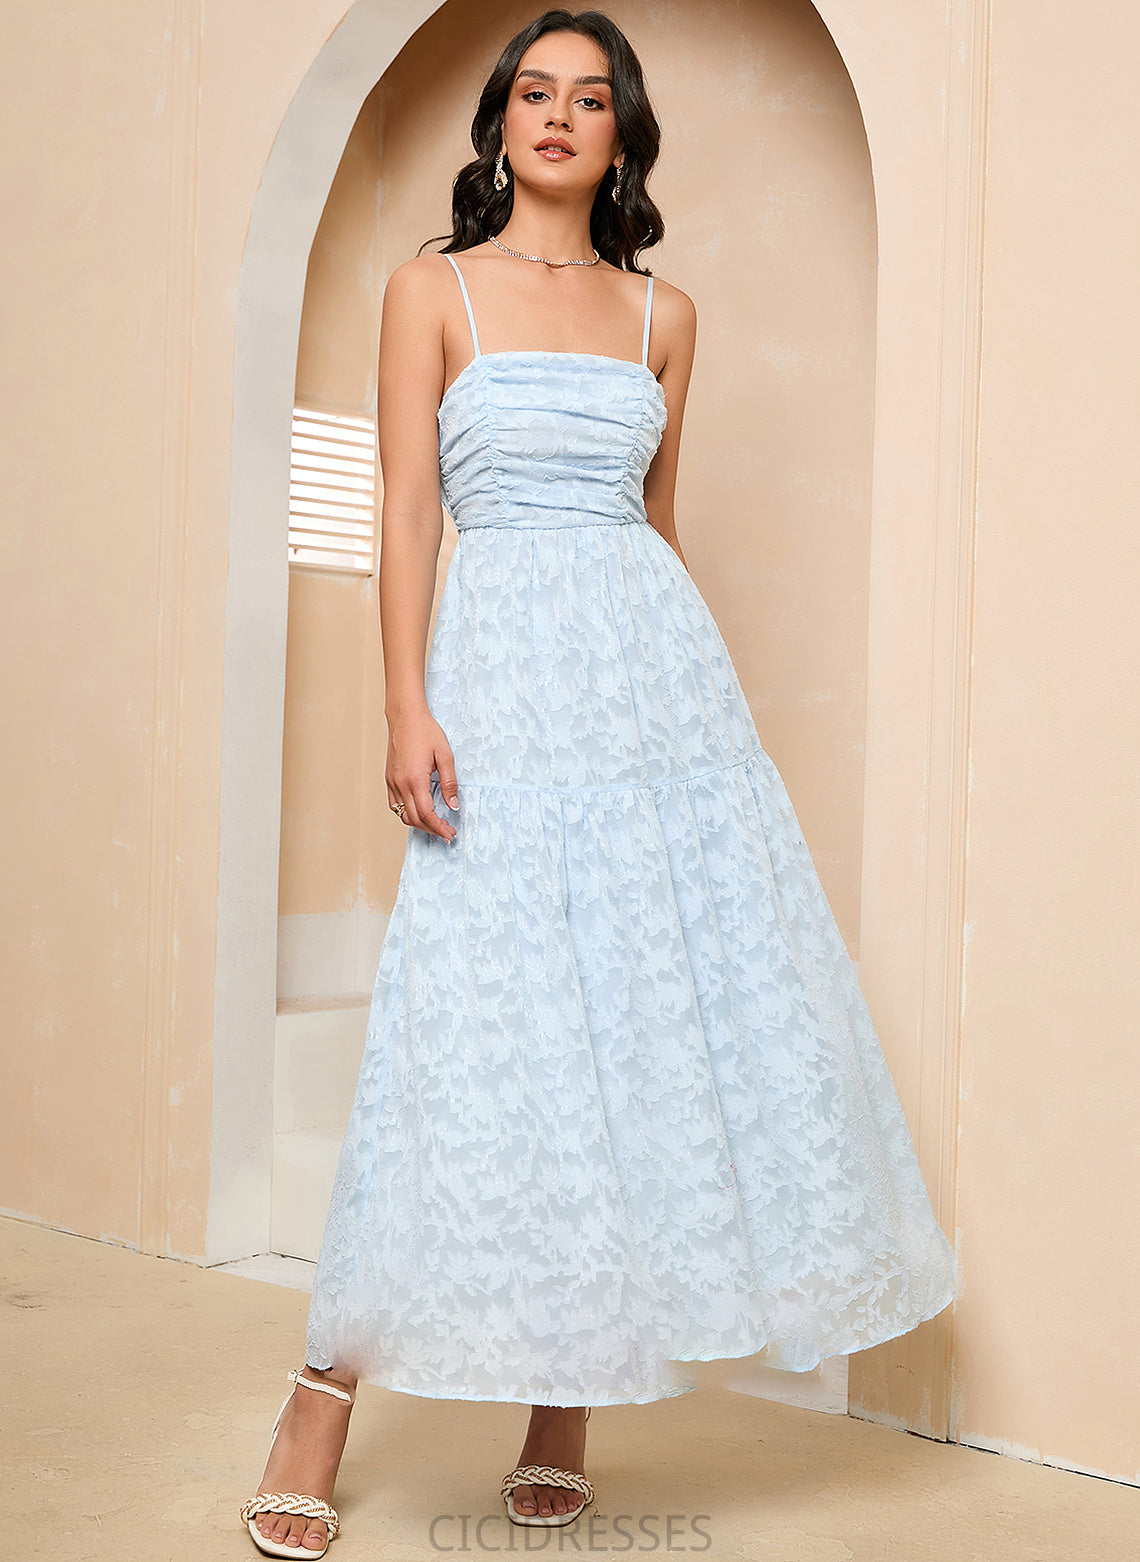 SquareNeckline Silhouette Fabric Straps Ankle-Length Length A-Line Neckline Regina Sleeveless Empire Waist V-Neck Bridesmaid Dresses